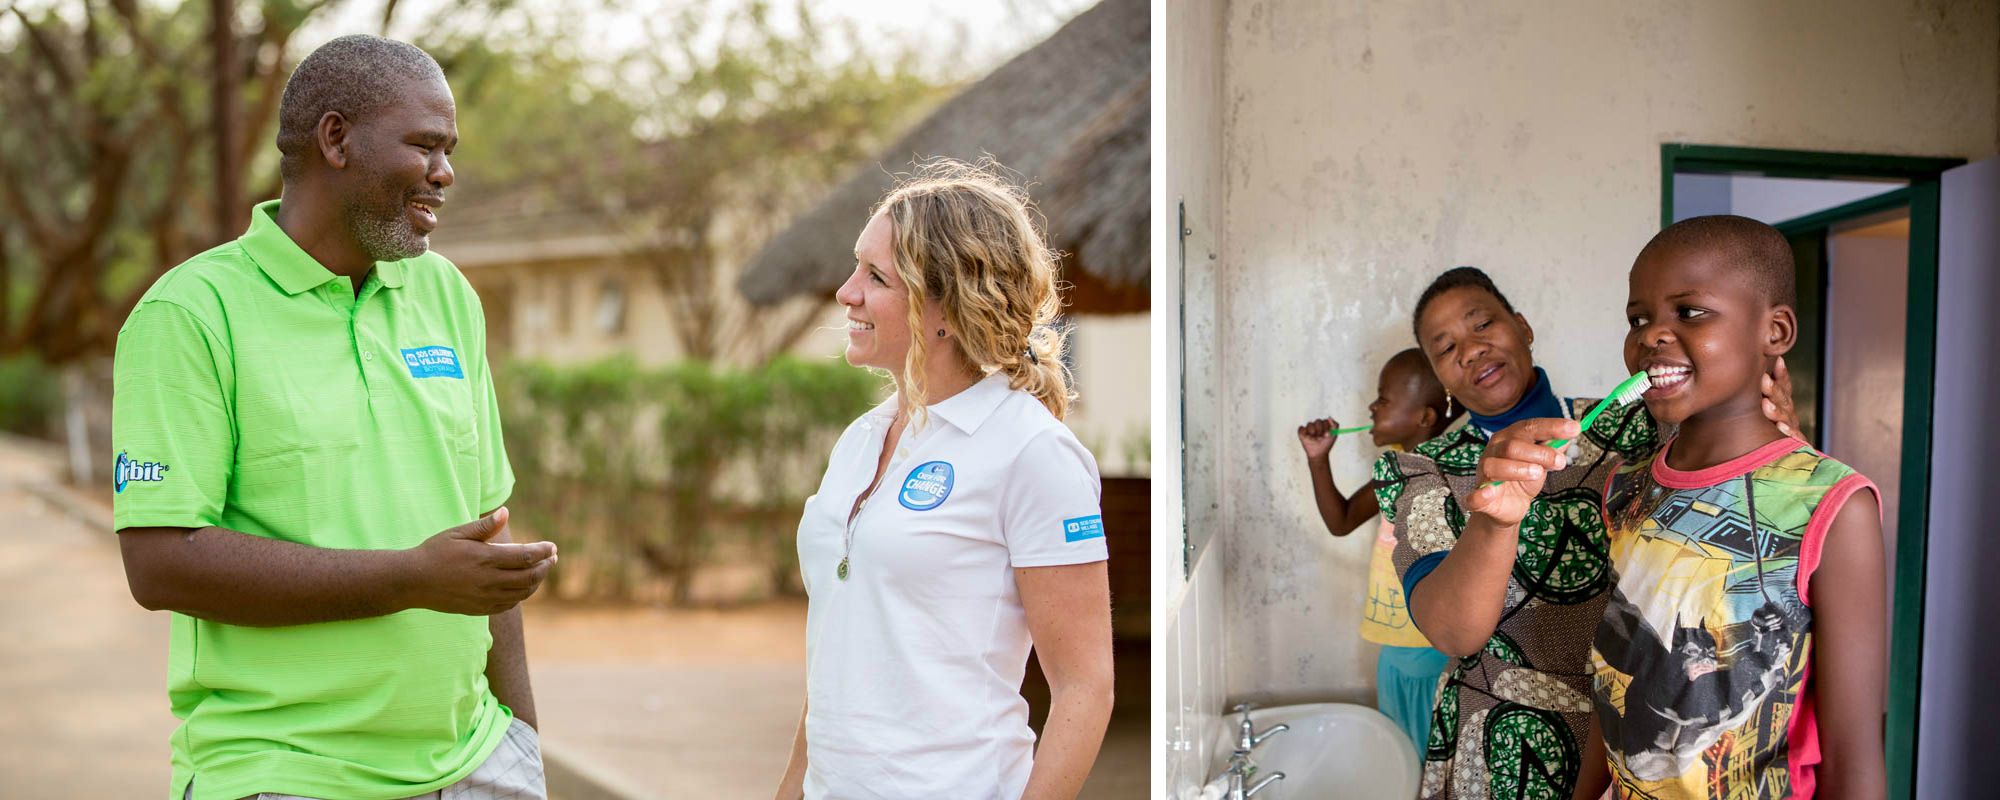 Mars Norge er hovedsamarbeidspartner av SOS-barnebyer, og fokuserer på tannhelse for barn i Ghana og Botswana. Foto: Karin Schermbrucker